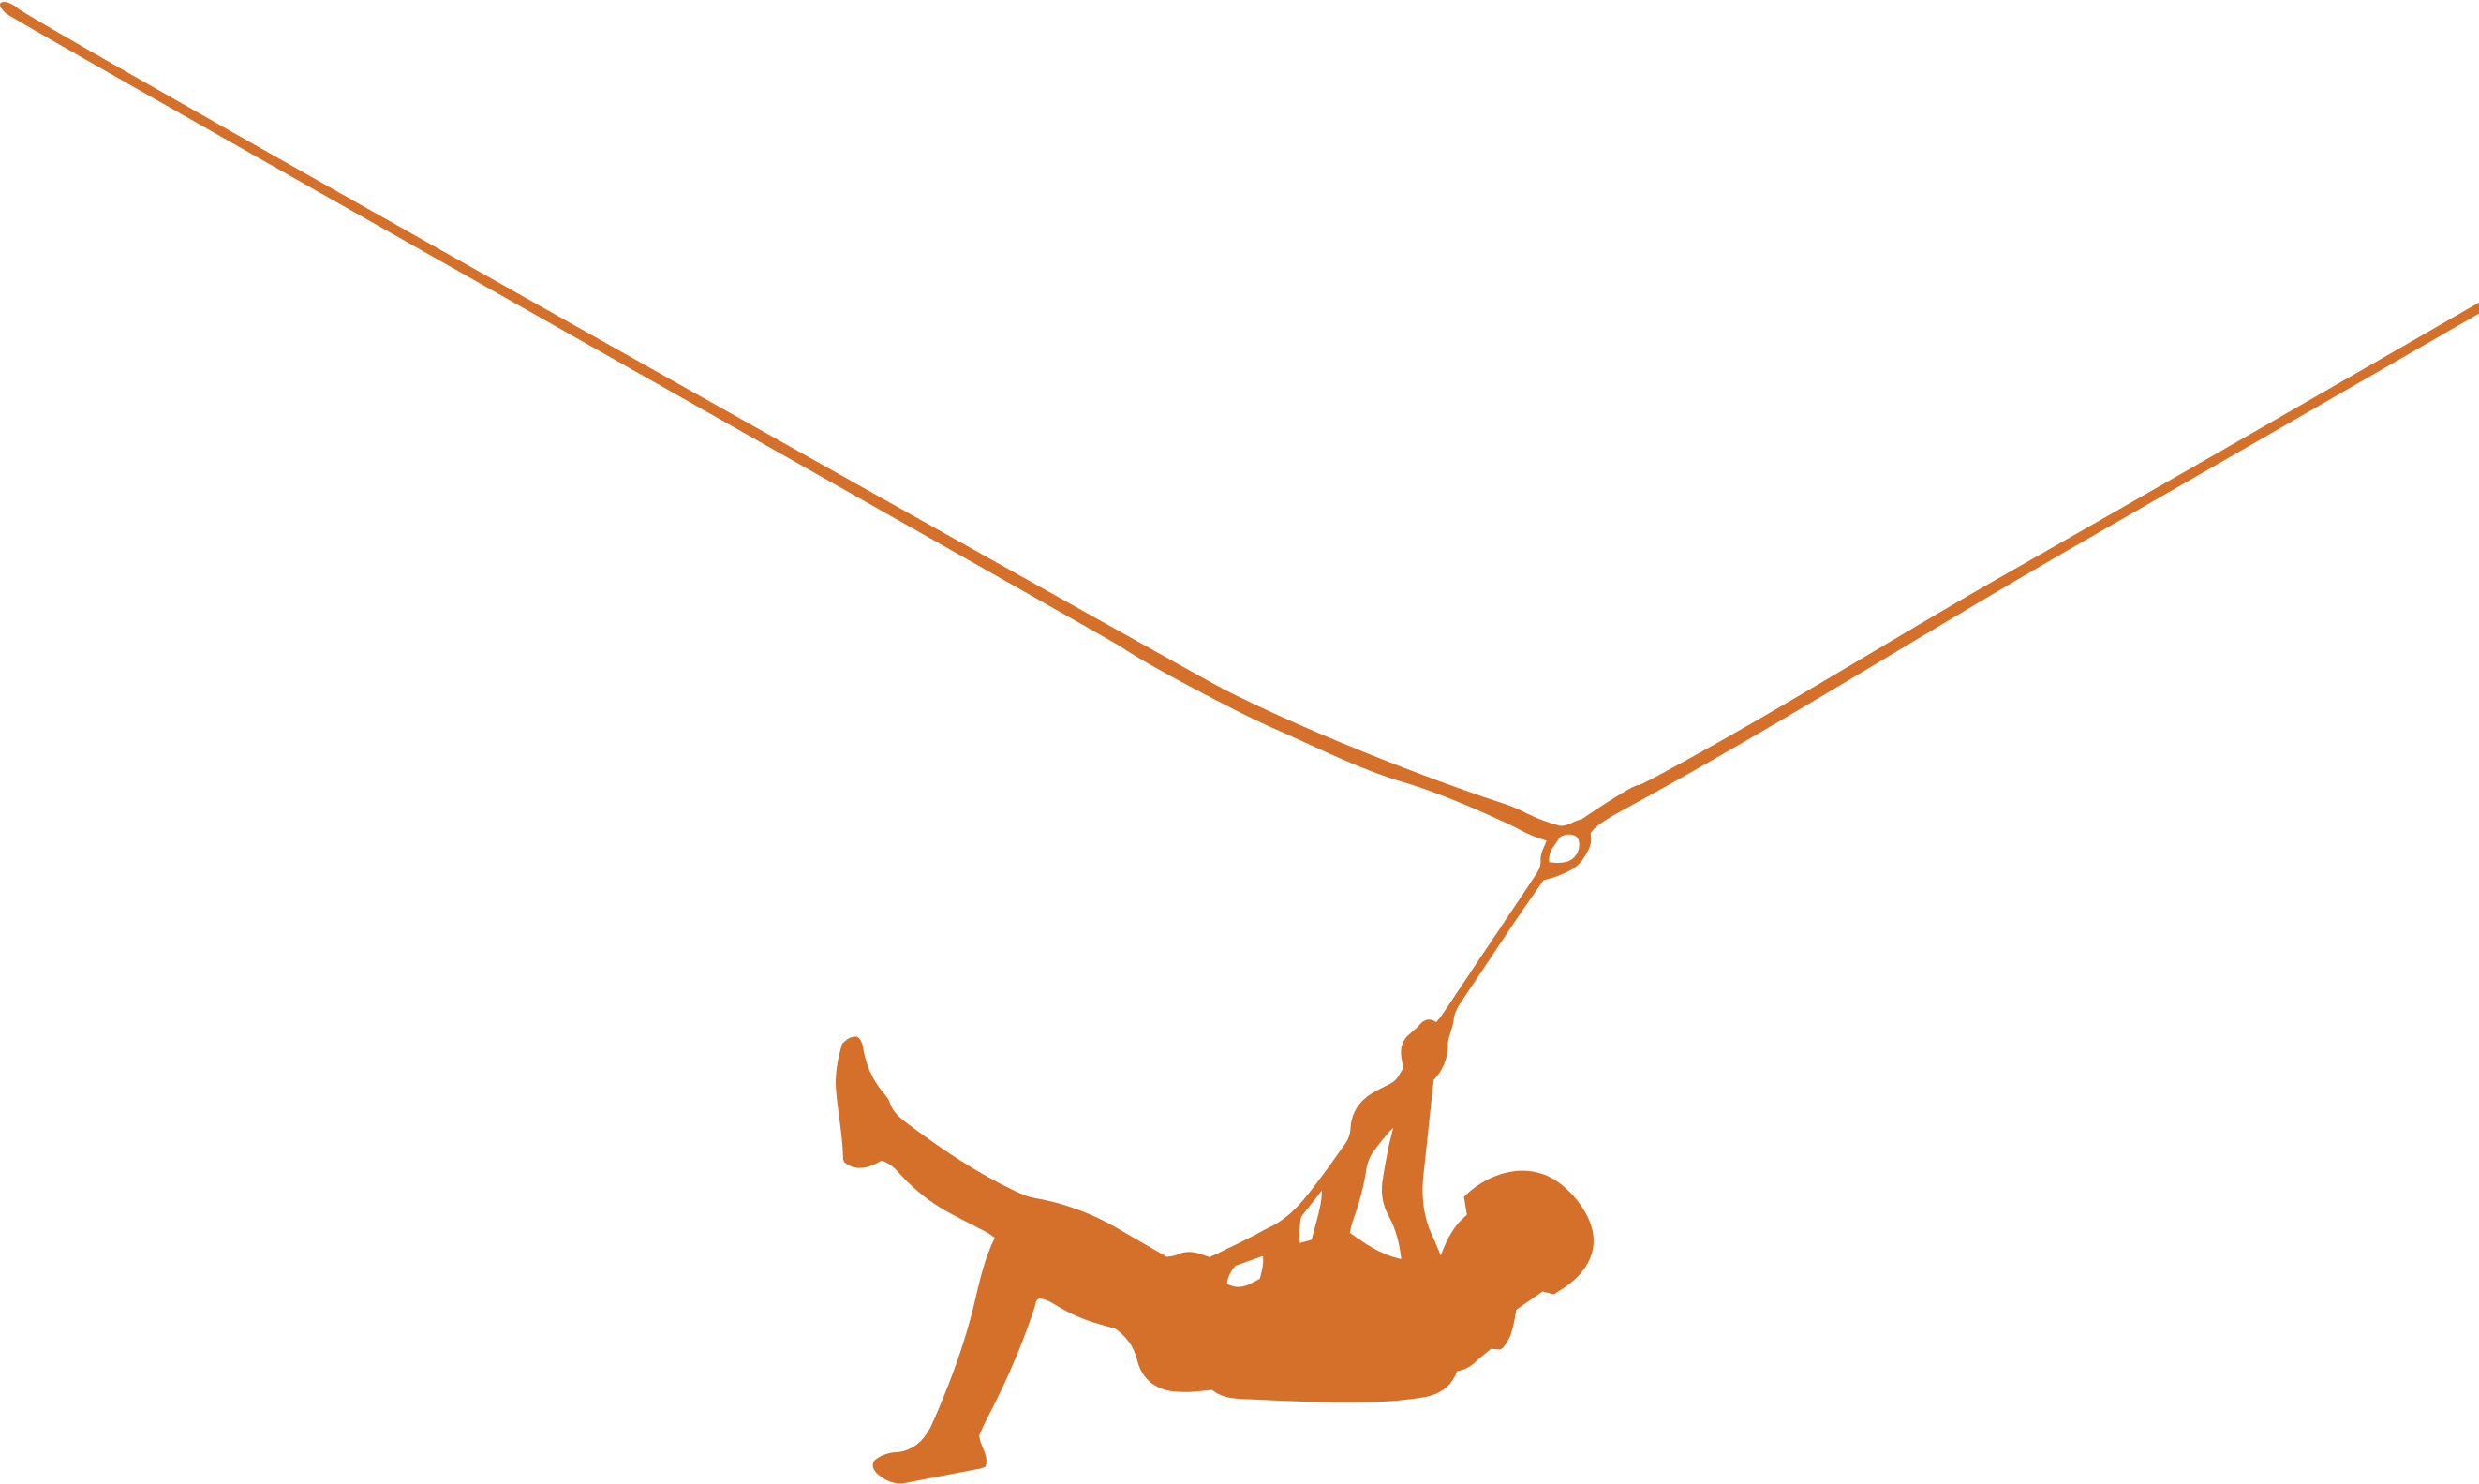 background illustration image of a zipliner